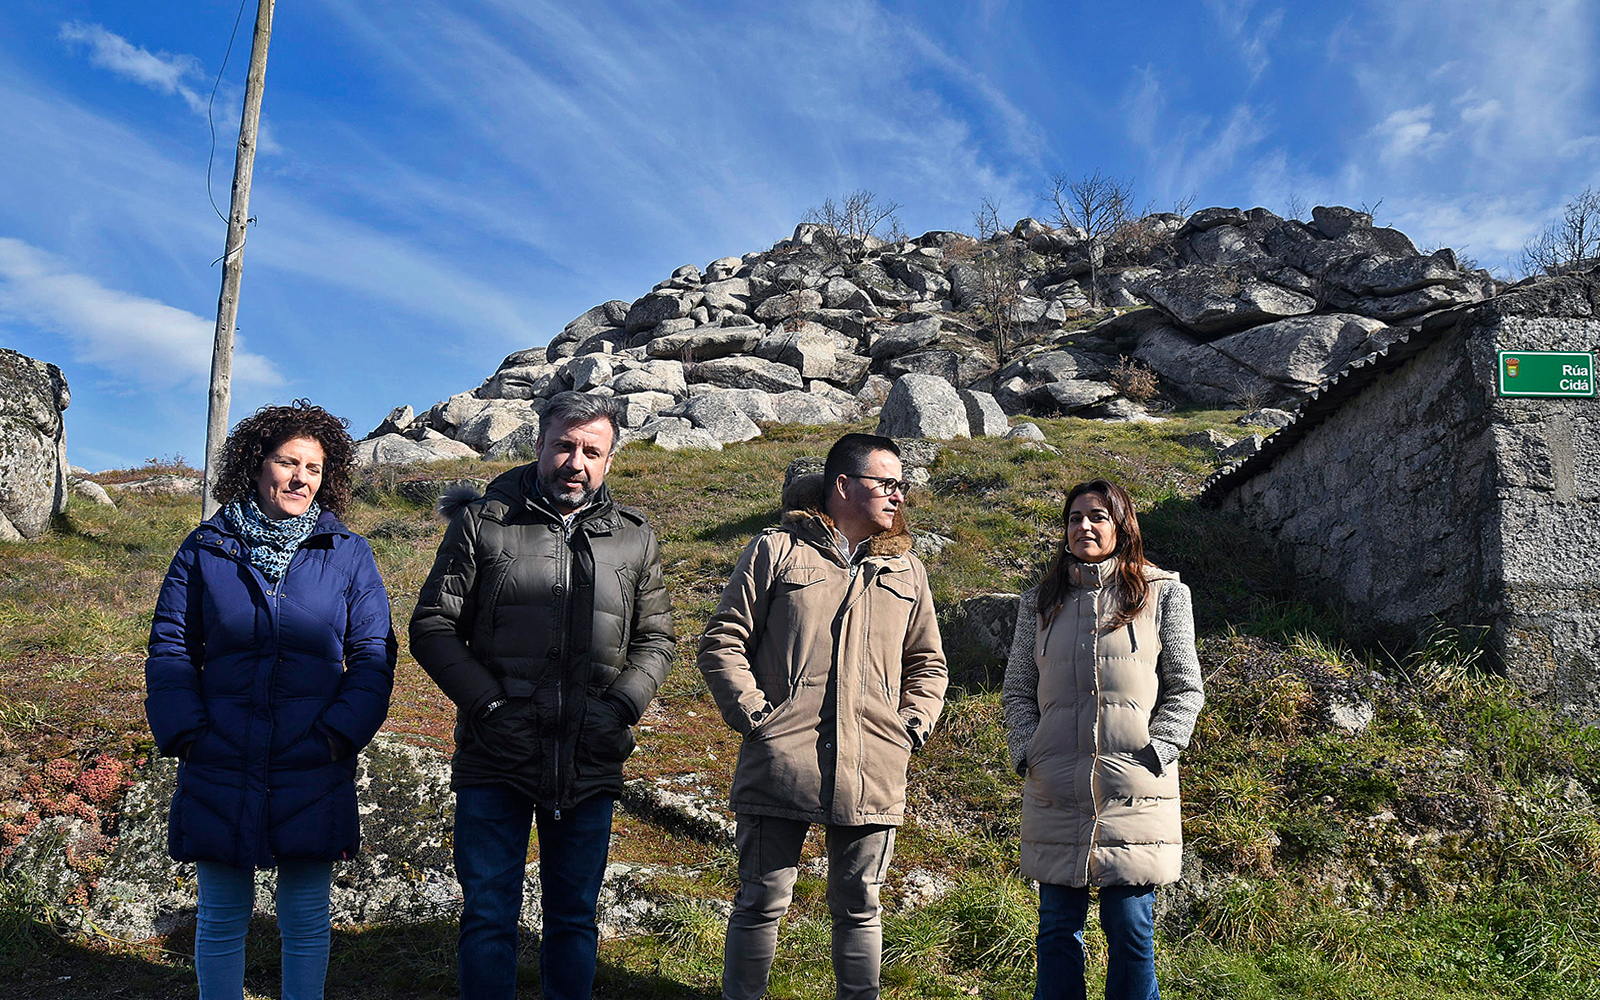 A Xunta destaca que a provincia de Ourense aglutina preto do 58% da superficie total que está sendo mobilizada a través dos polígonos agroforestais